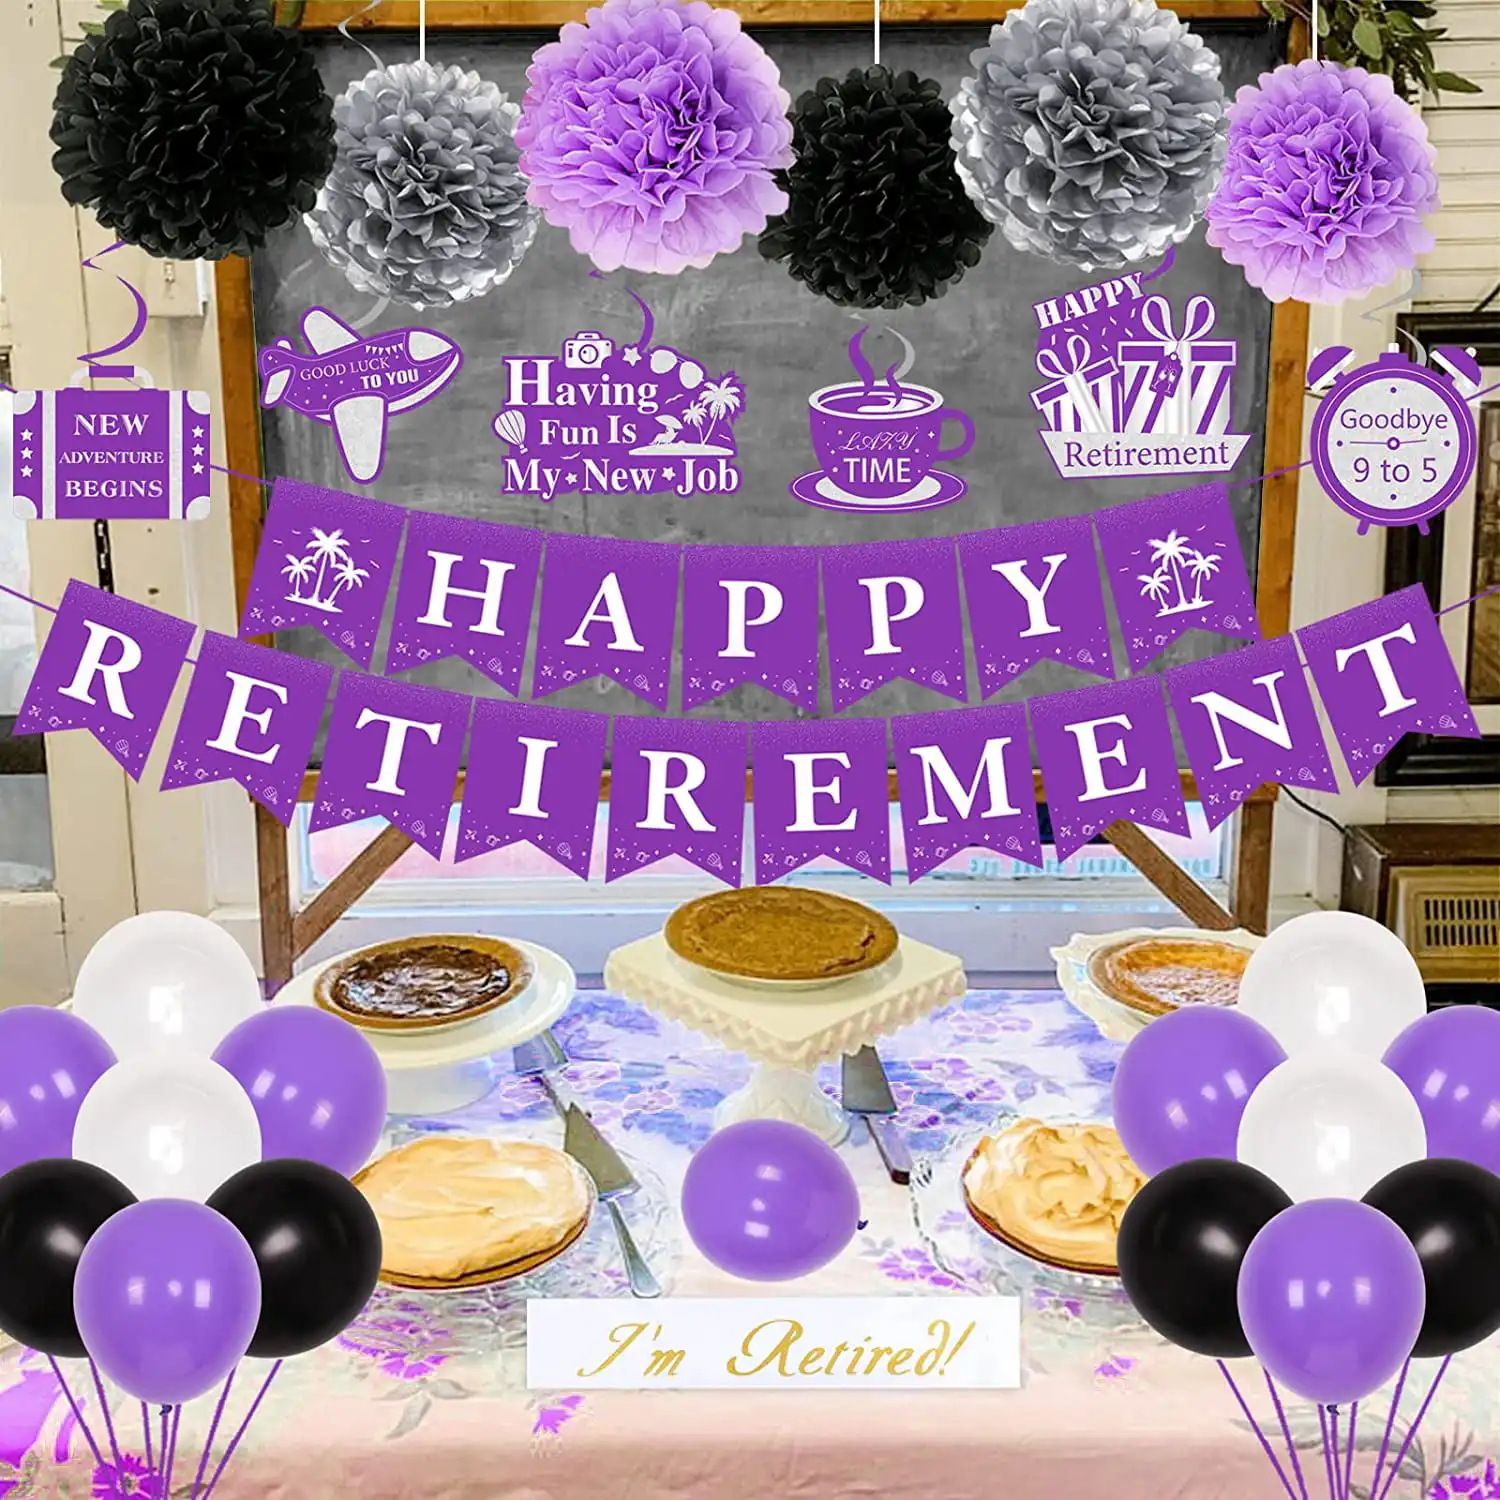 Faixa de banner de feliz aposentadoria, flores de papel pom poms e balões, decoração de suspensão, suprimentos para aposentadoria